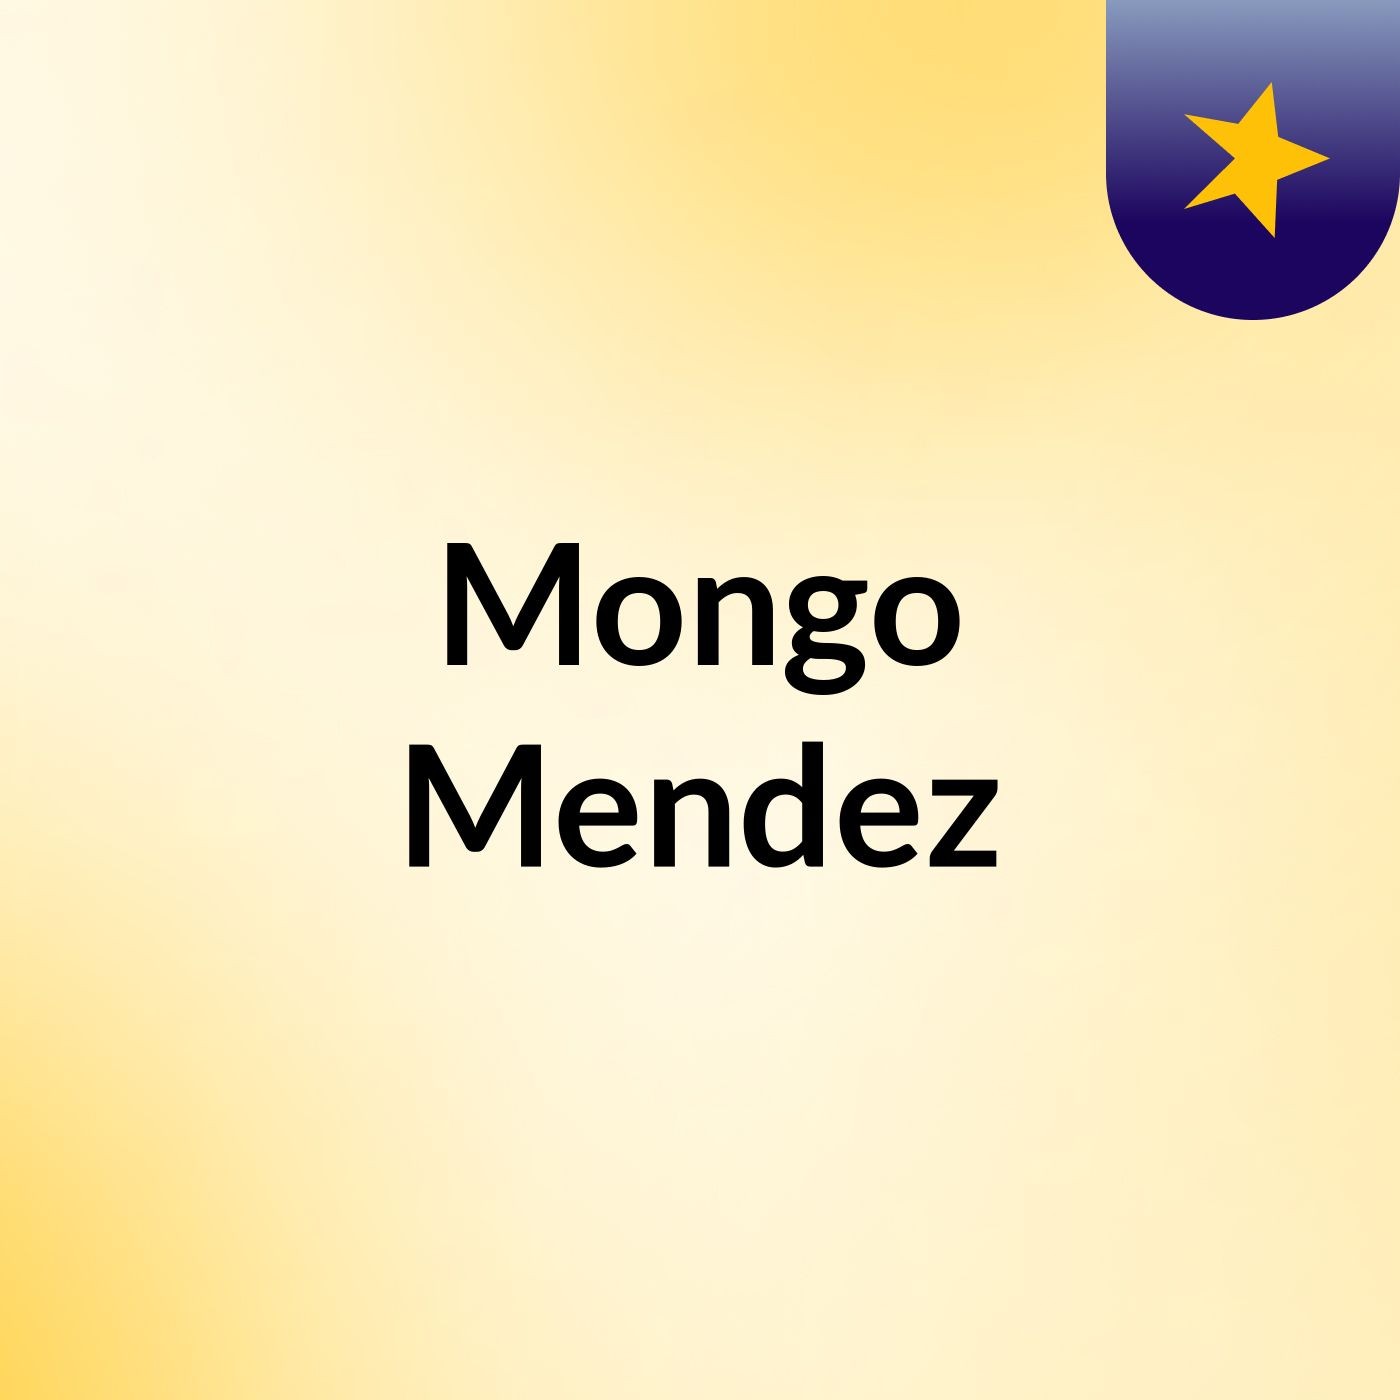 Mongo Mendez